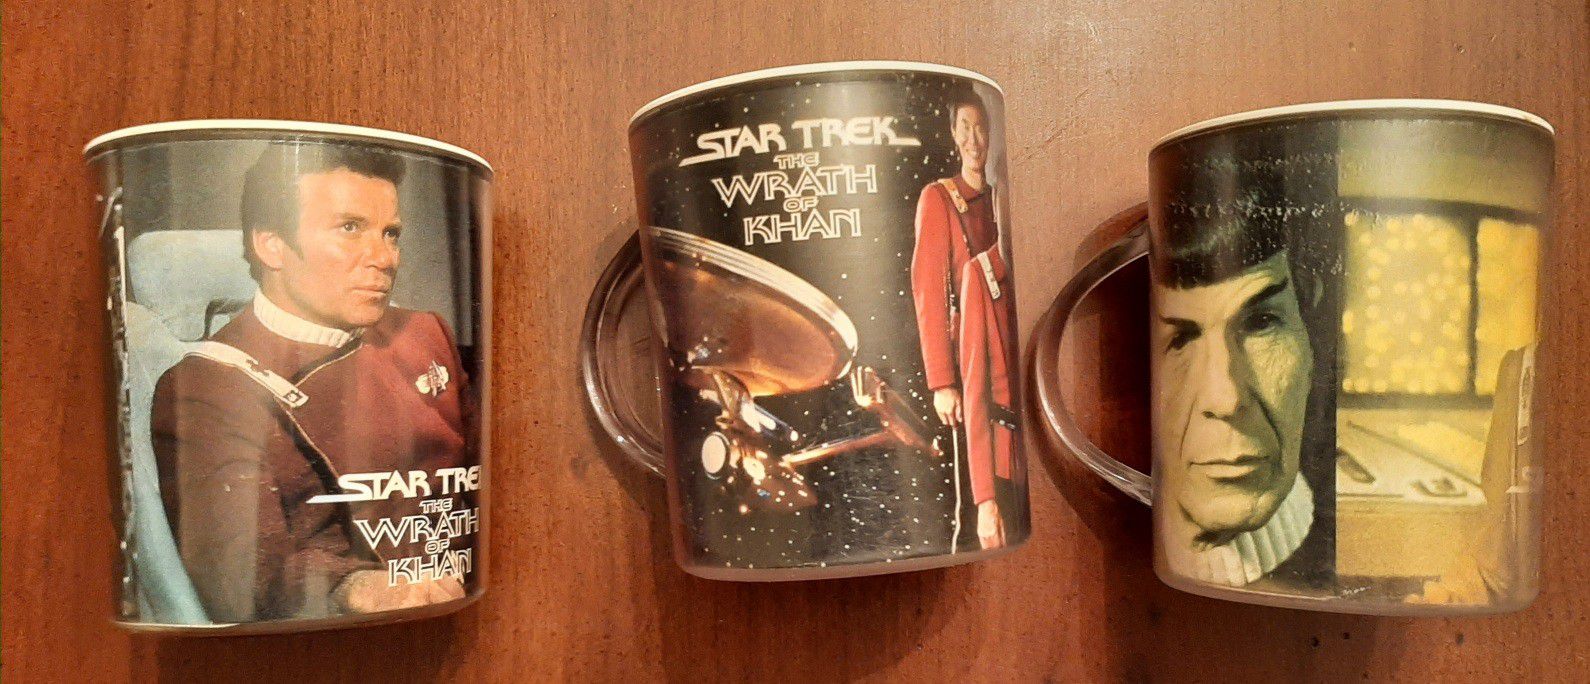 Star Trek Wrath Of Khan plastic mugs